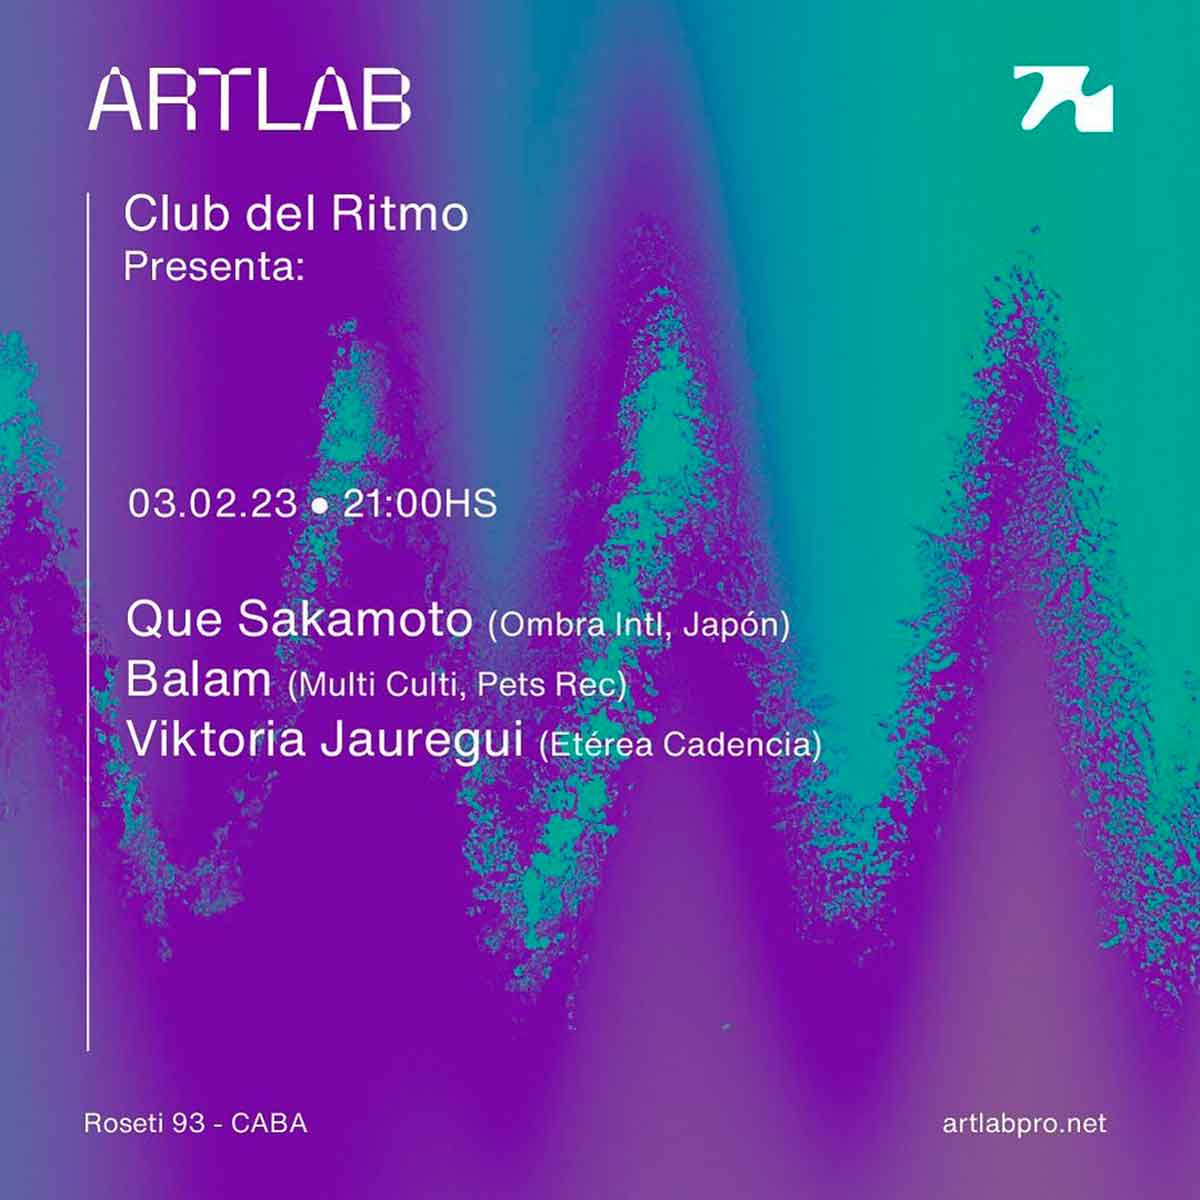 Club del Ritmo en Artlab